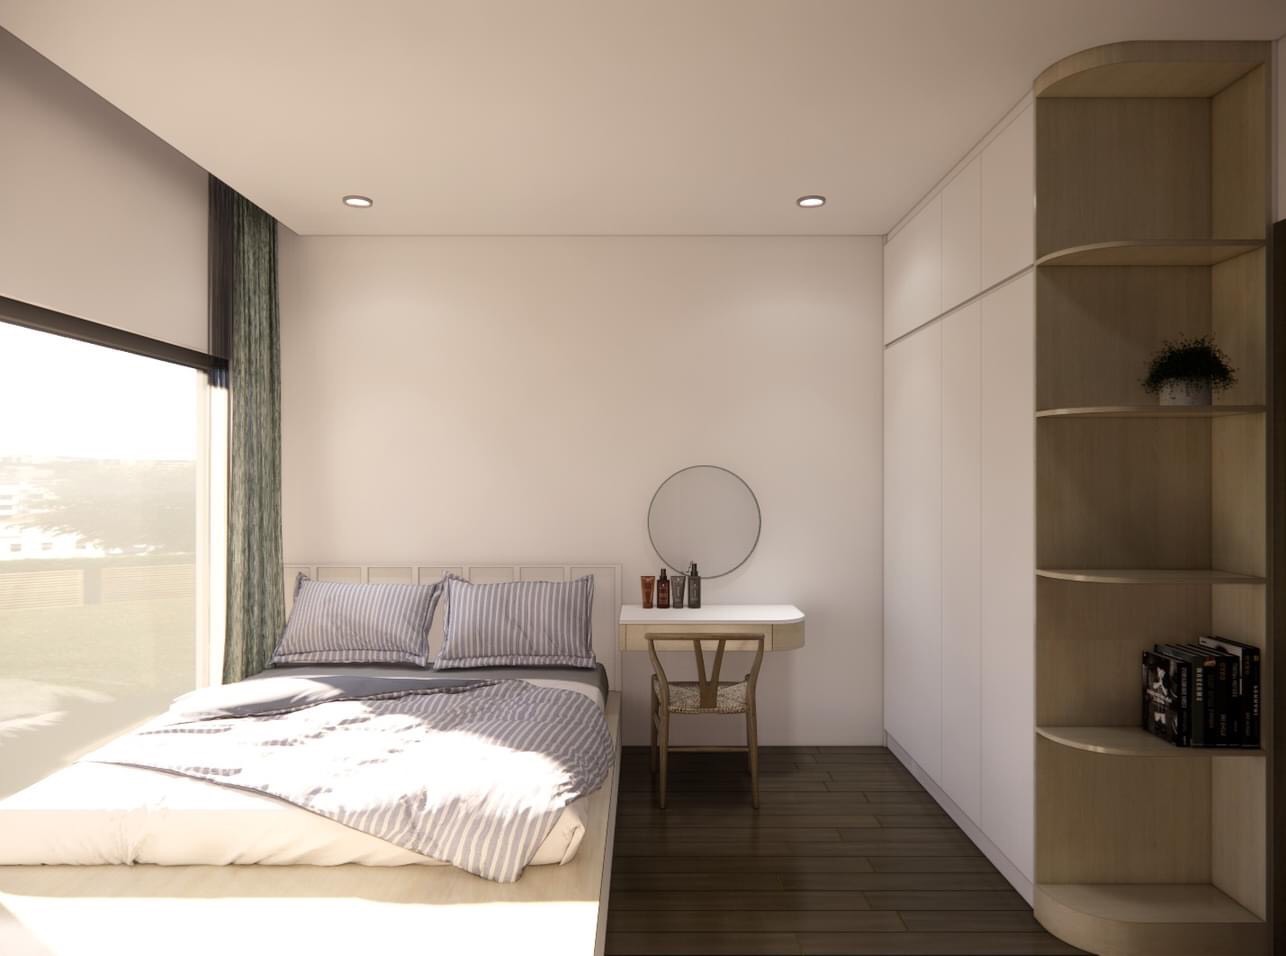 Thiết kế giường ngủ dạng bục cho không gian nhỏ